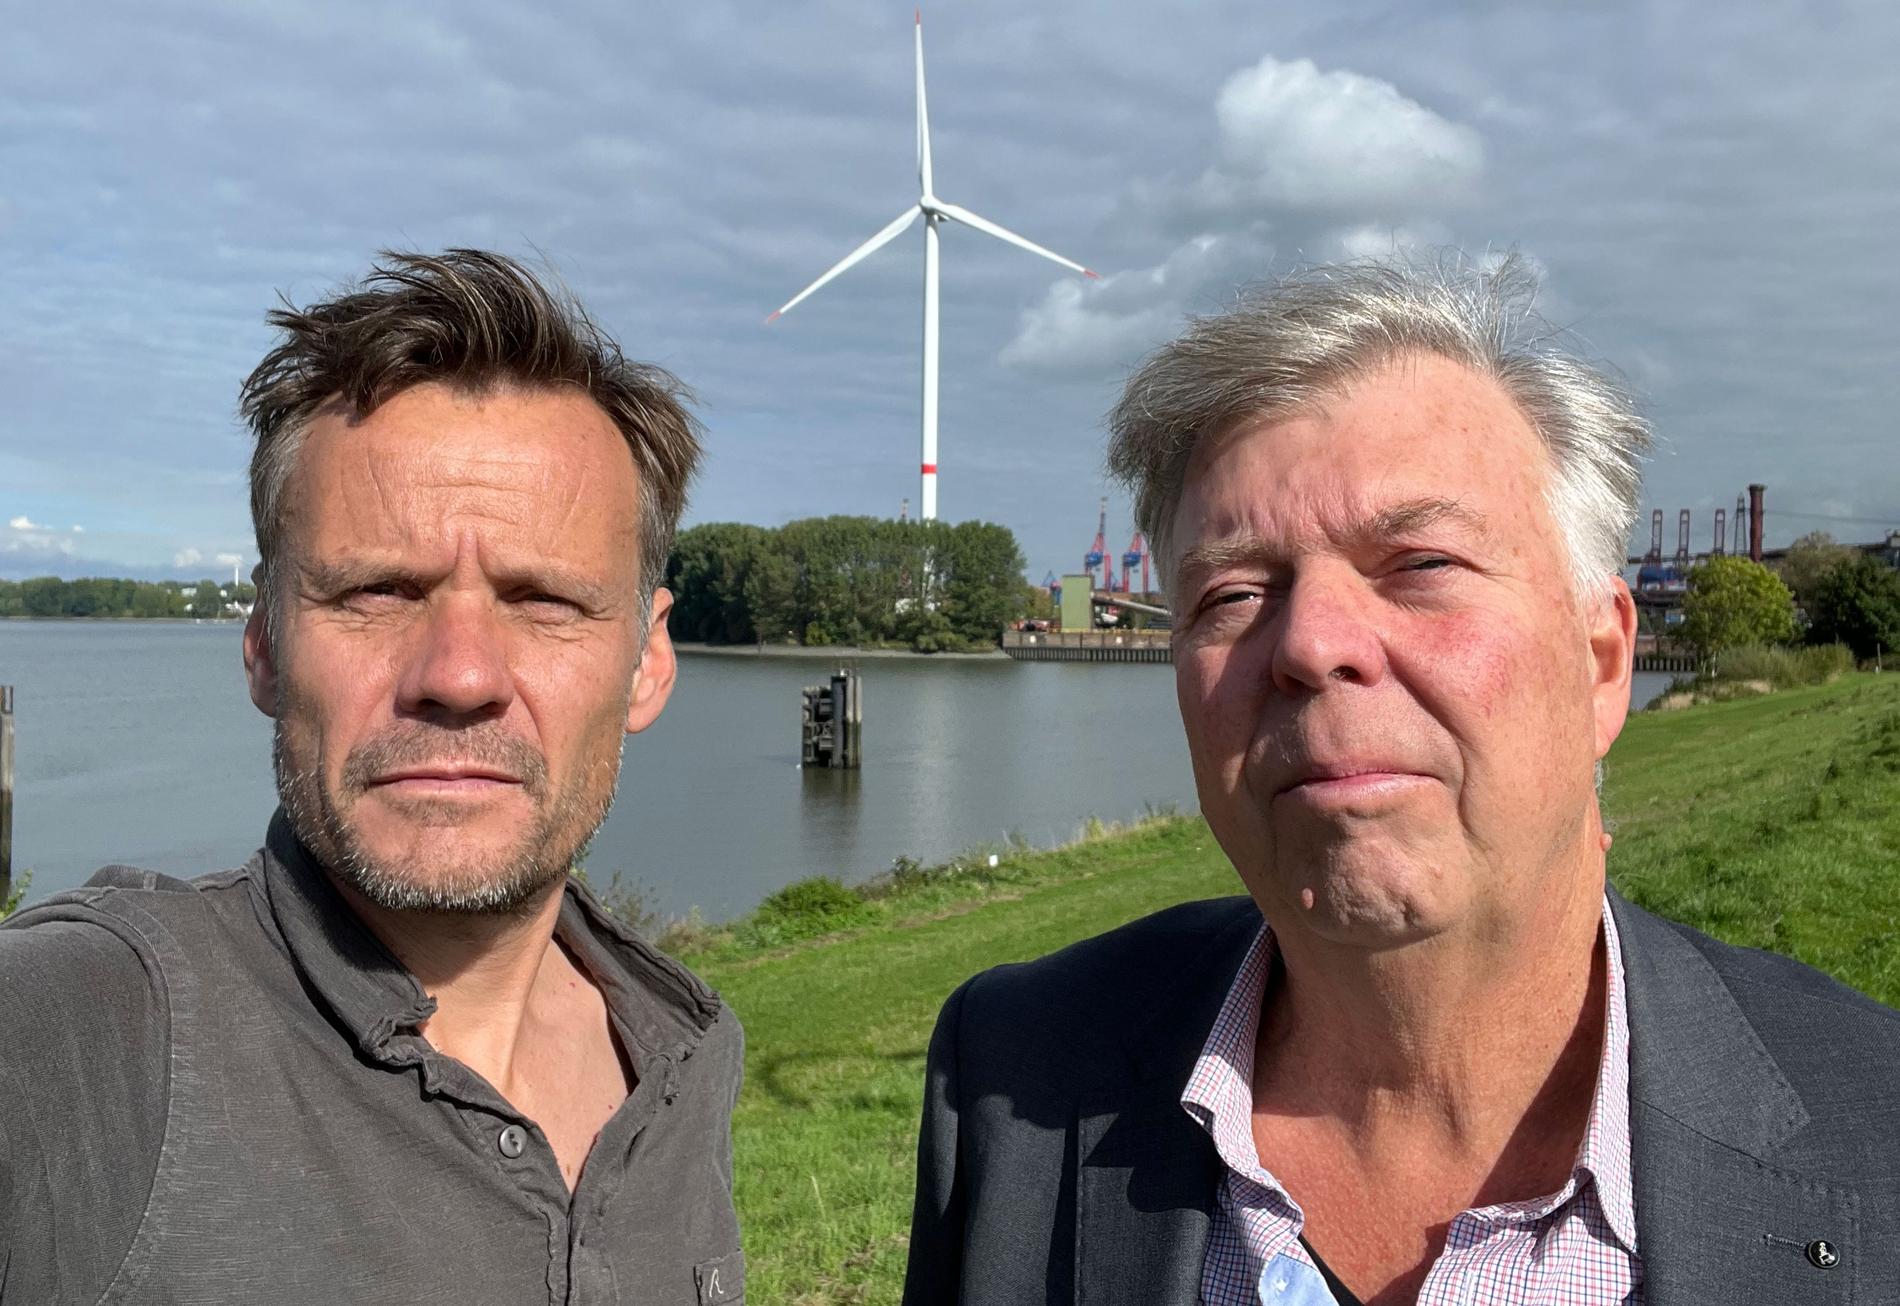 Aftonbladets fotograf Jerker Ivarsson och reporter Wolfgang Hansson på plats i Wilhelmshaven, Tyskland. 